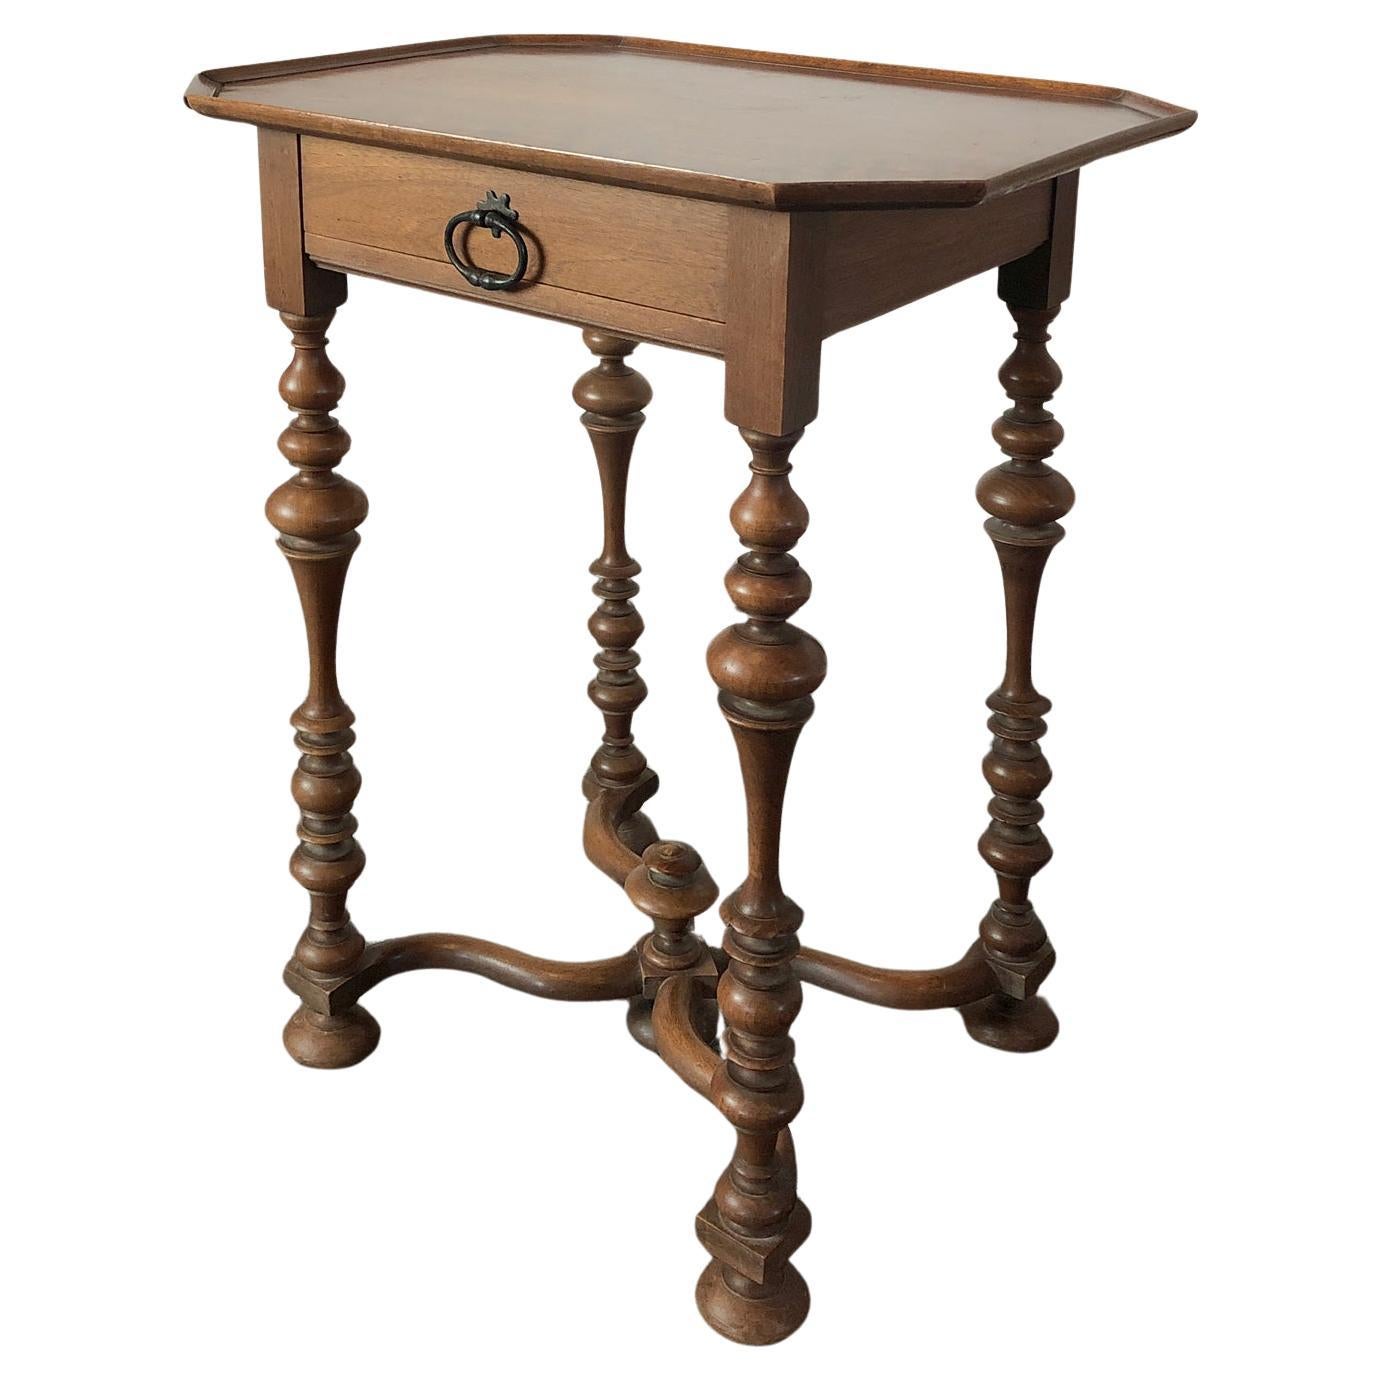 Petite table française de style Louis XIII